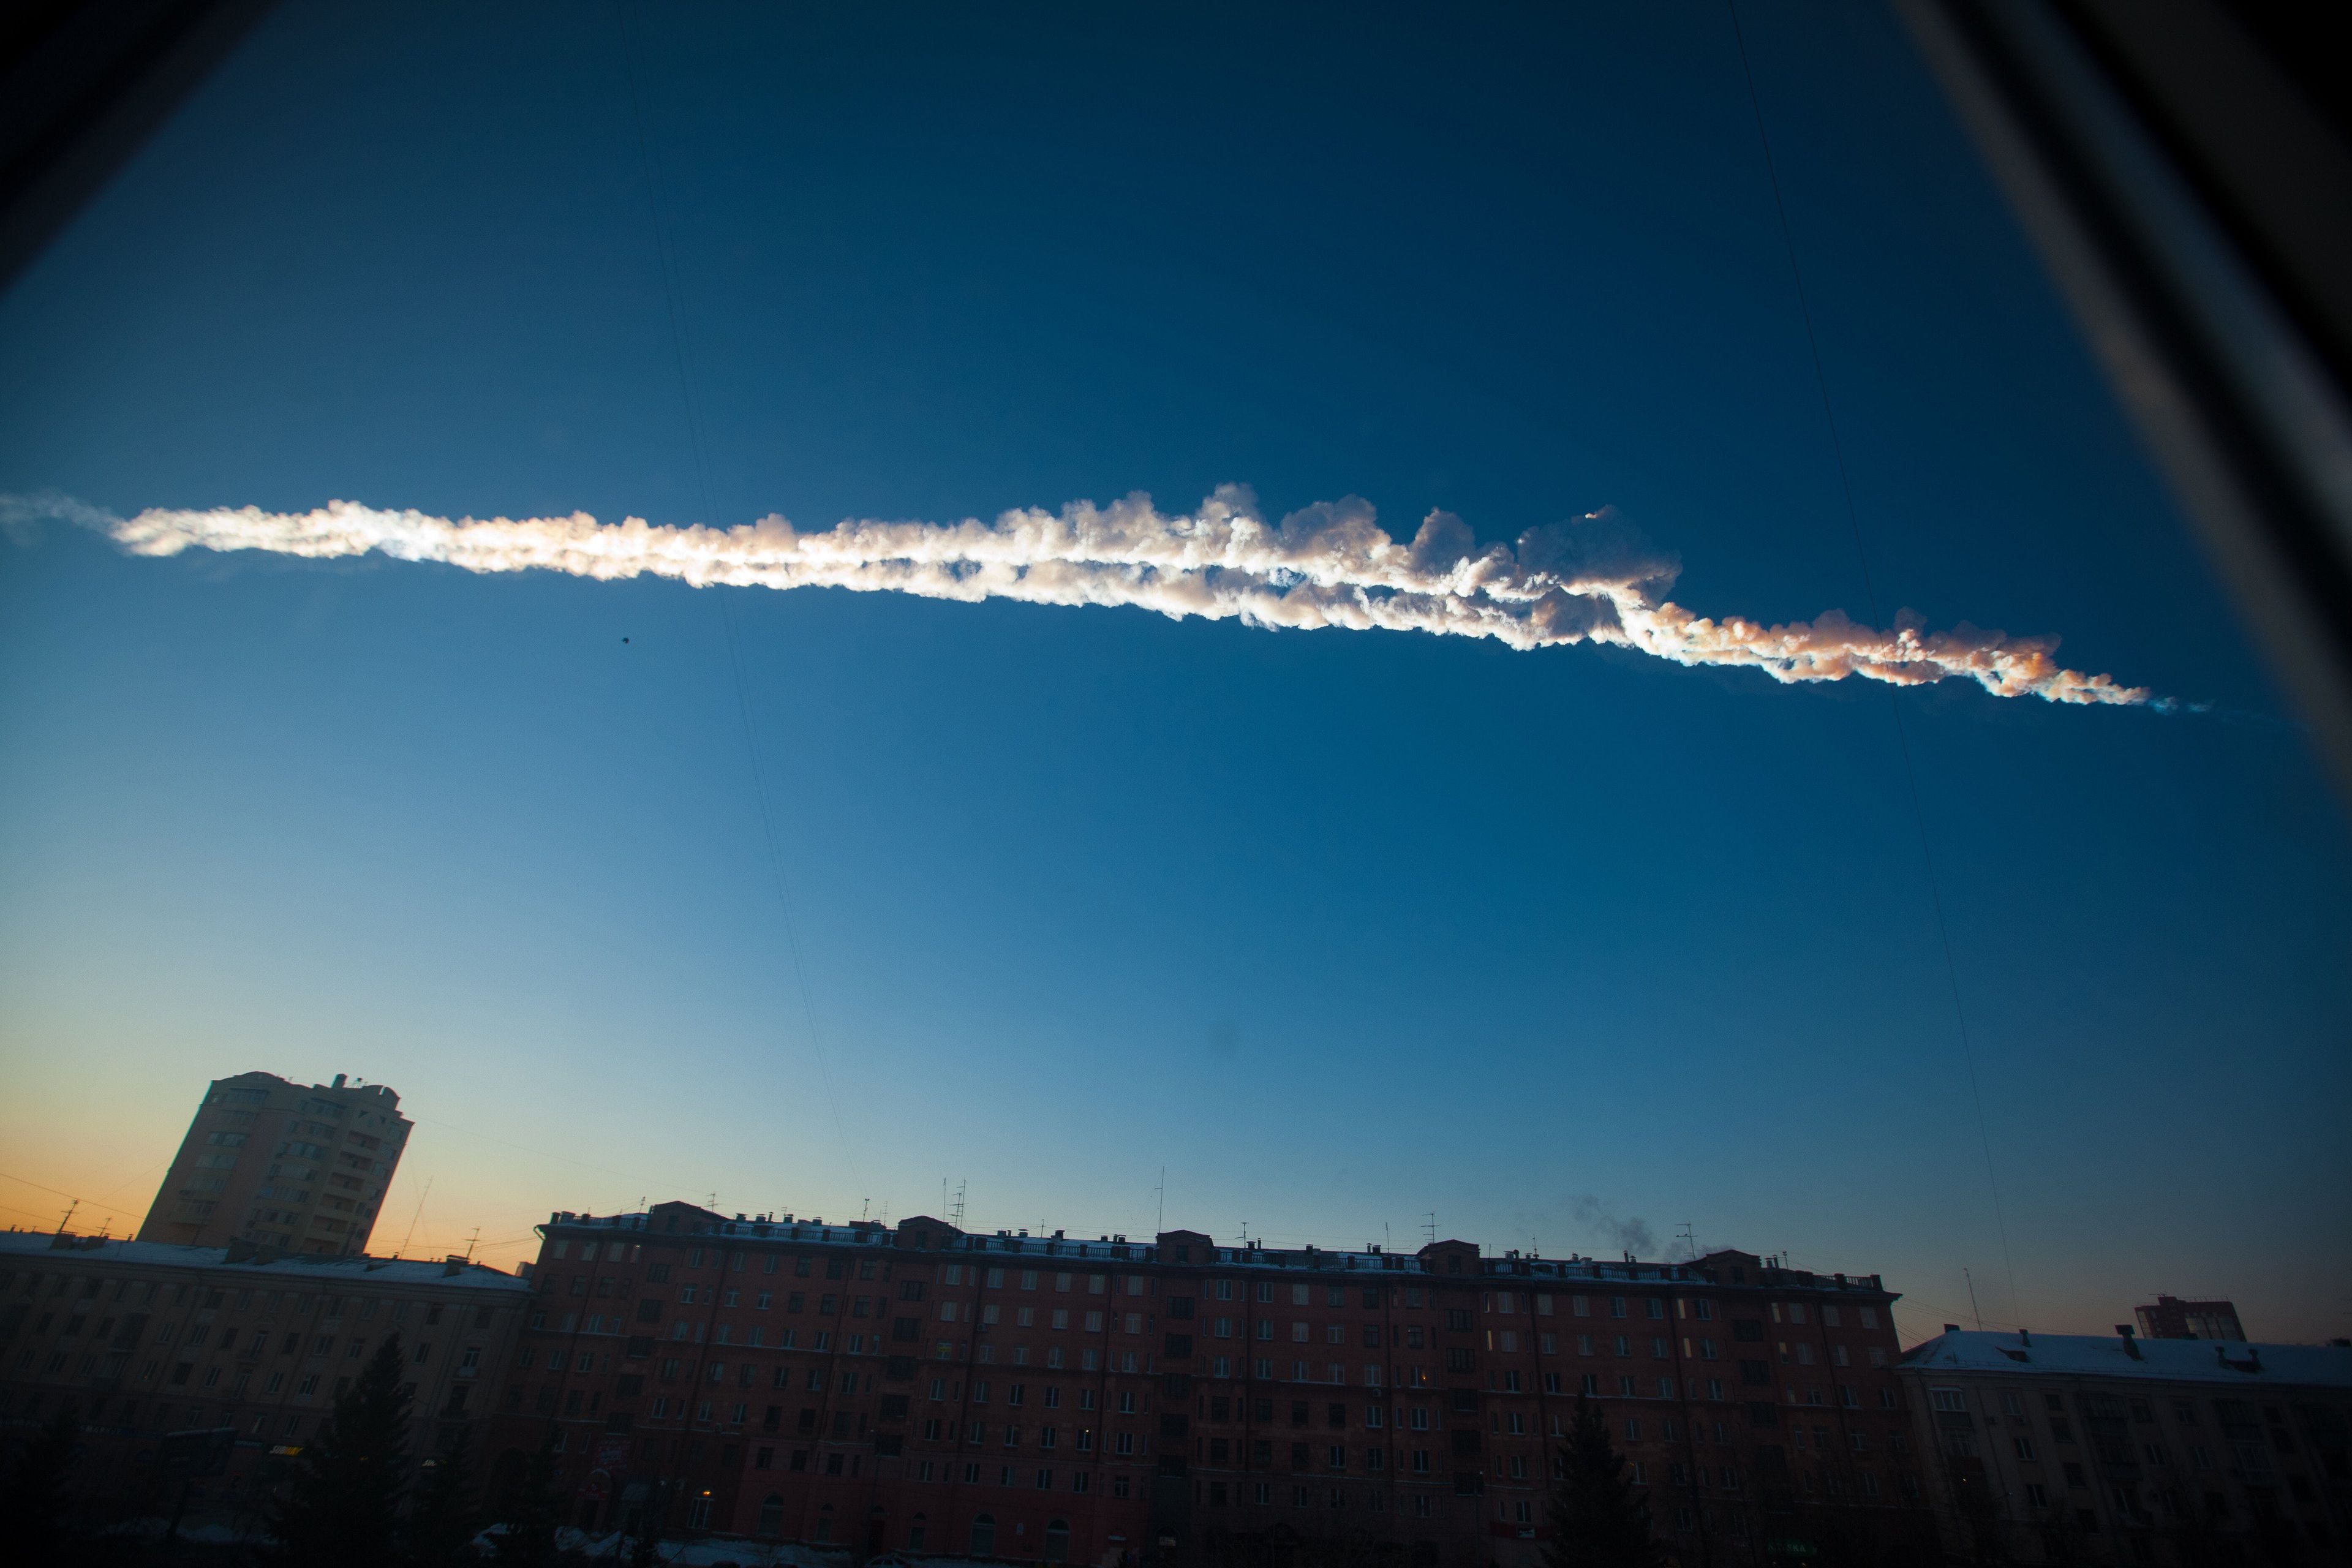 Un asteroide del tamaño de una casa entró en la atmósfera por encima de Cheliábinsk, Rusia, en 2013.